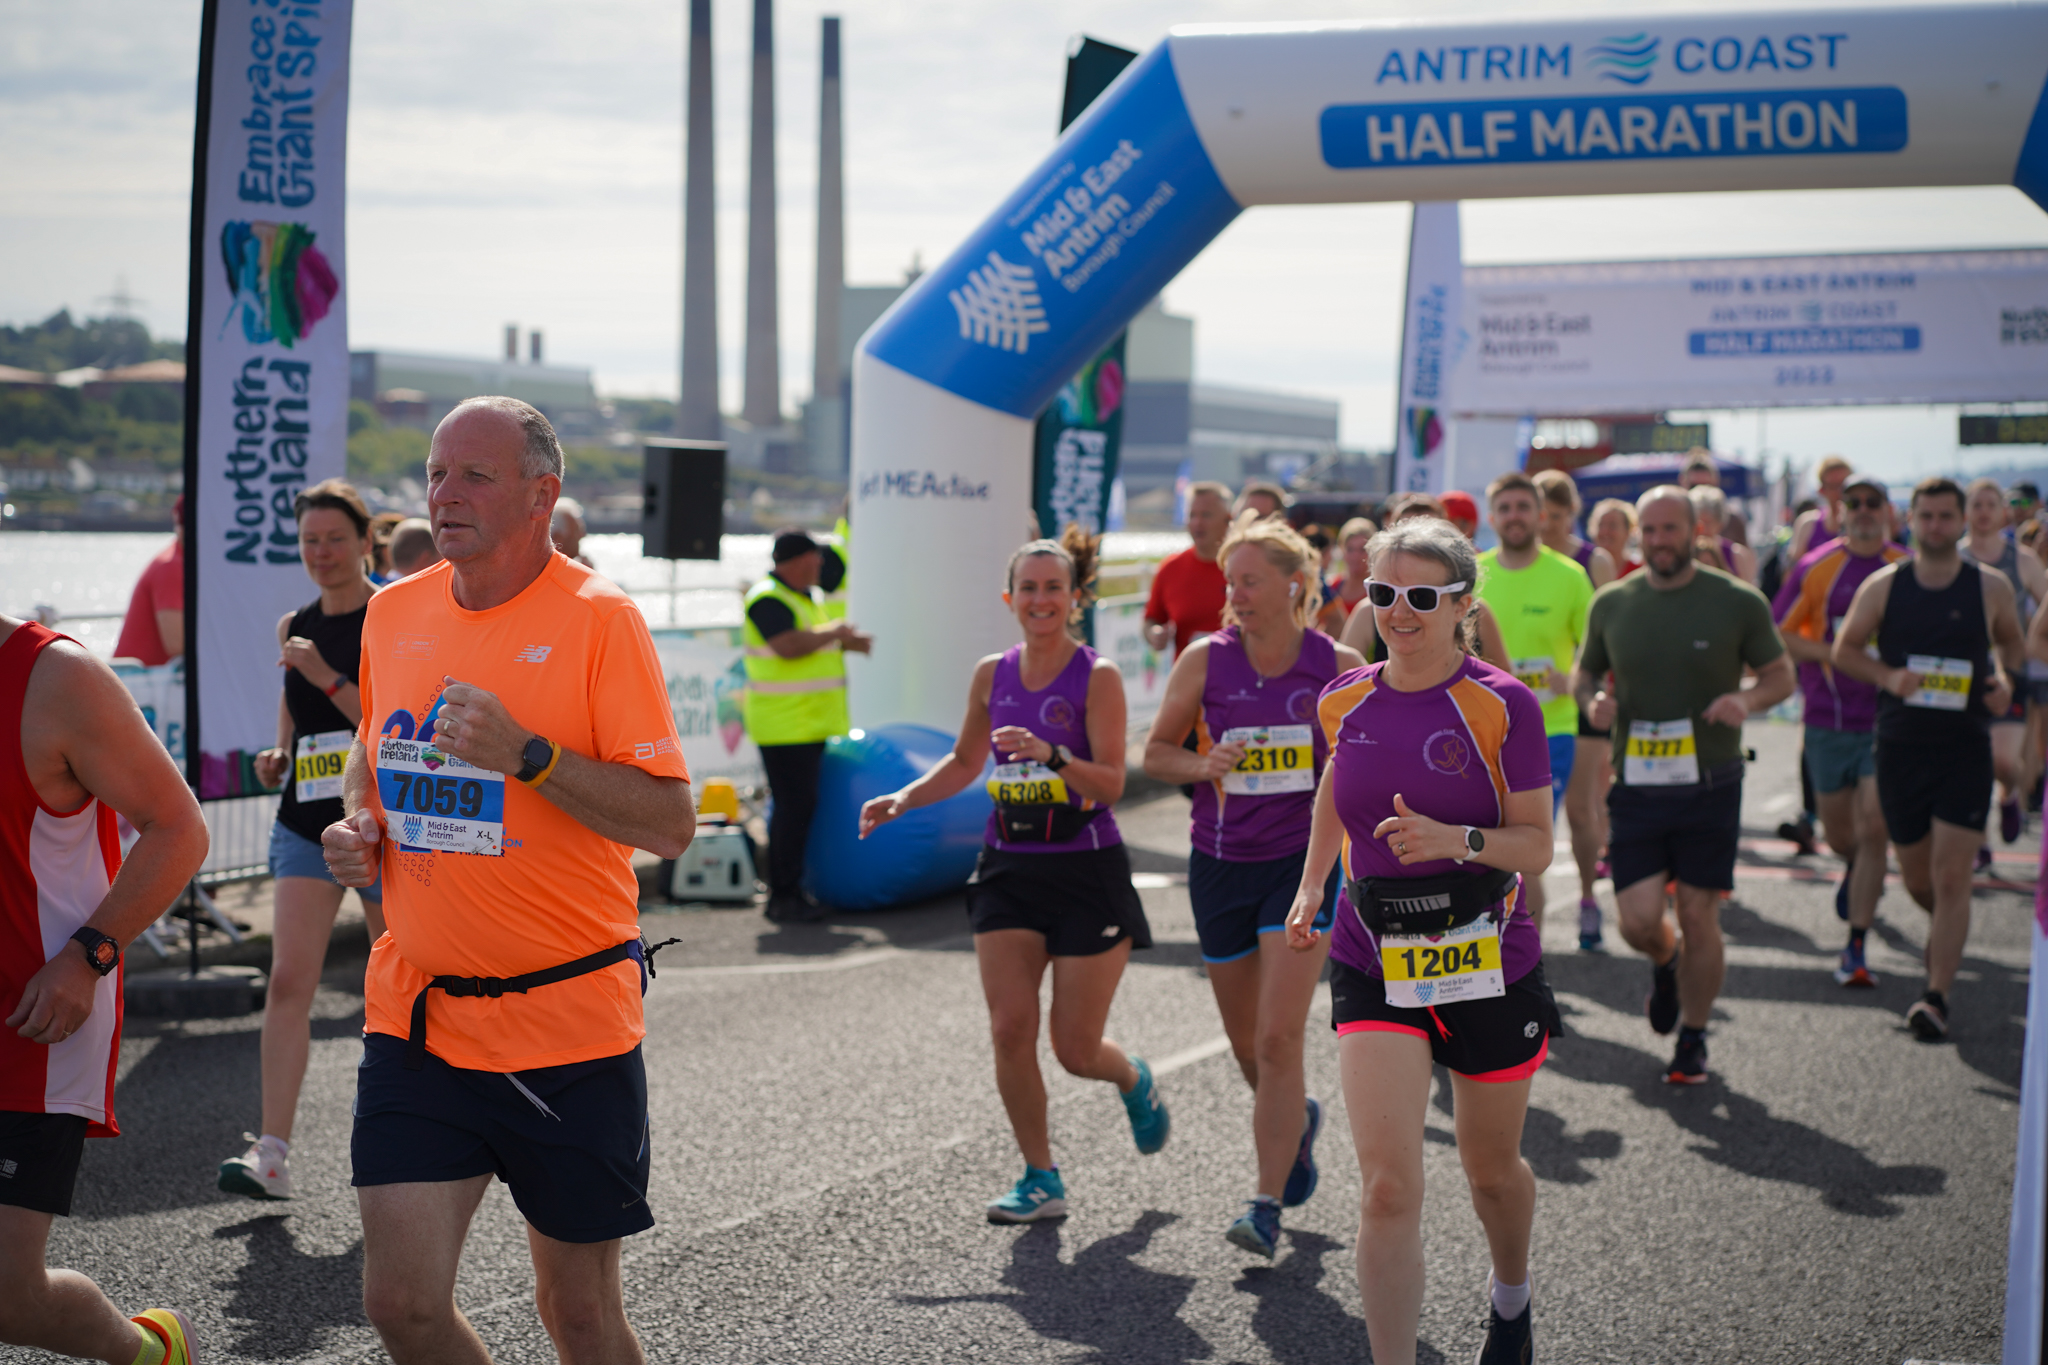 Antrim Coast half marathon